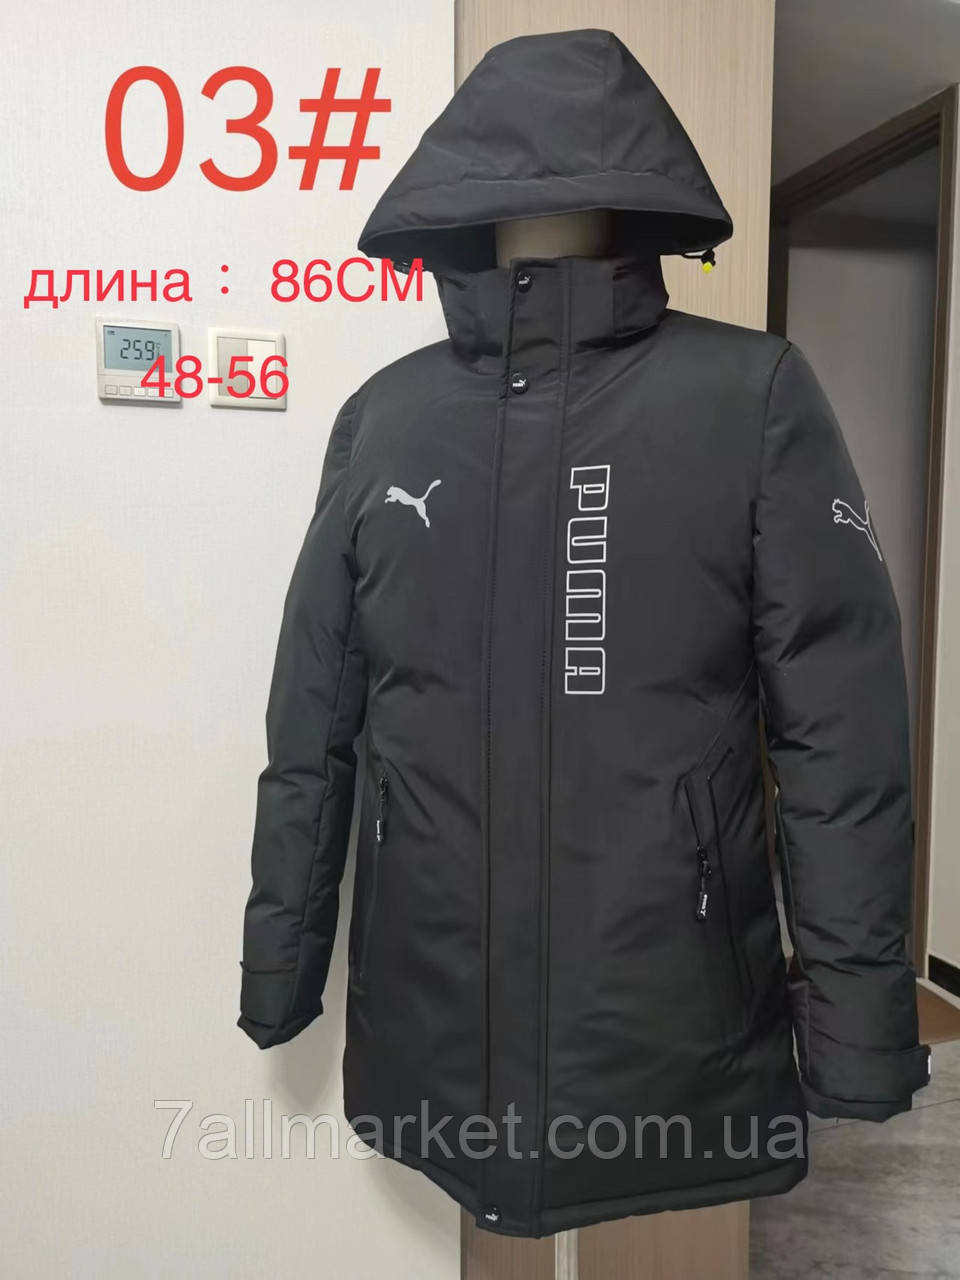 Куртка чоловіча зимова, розміри 48-56 "SPARTA" купити недорого від прямого постачальника